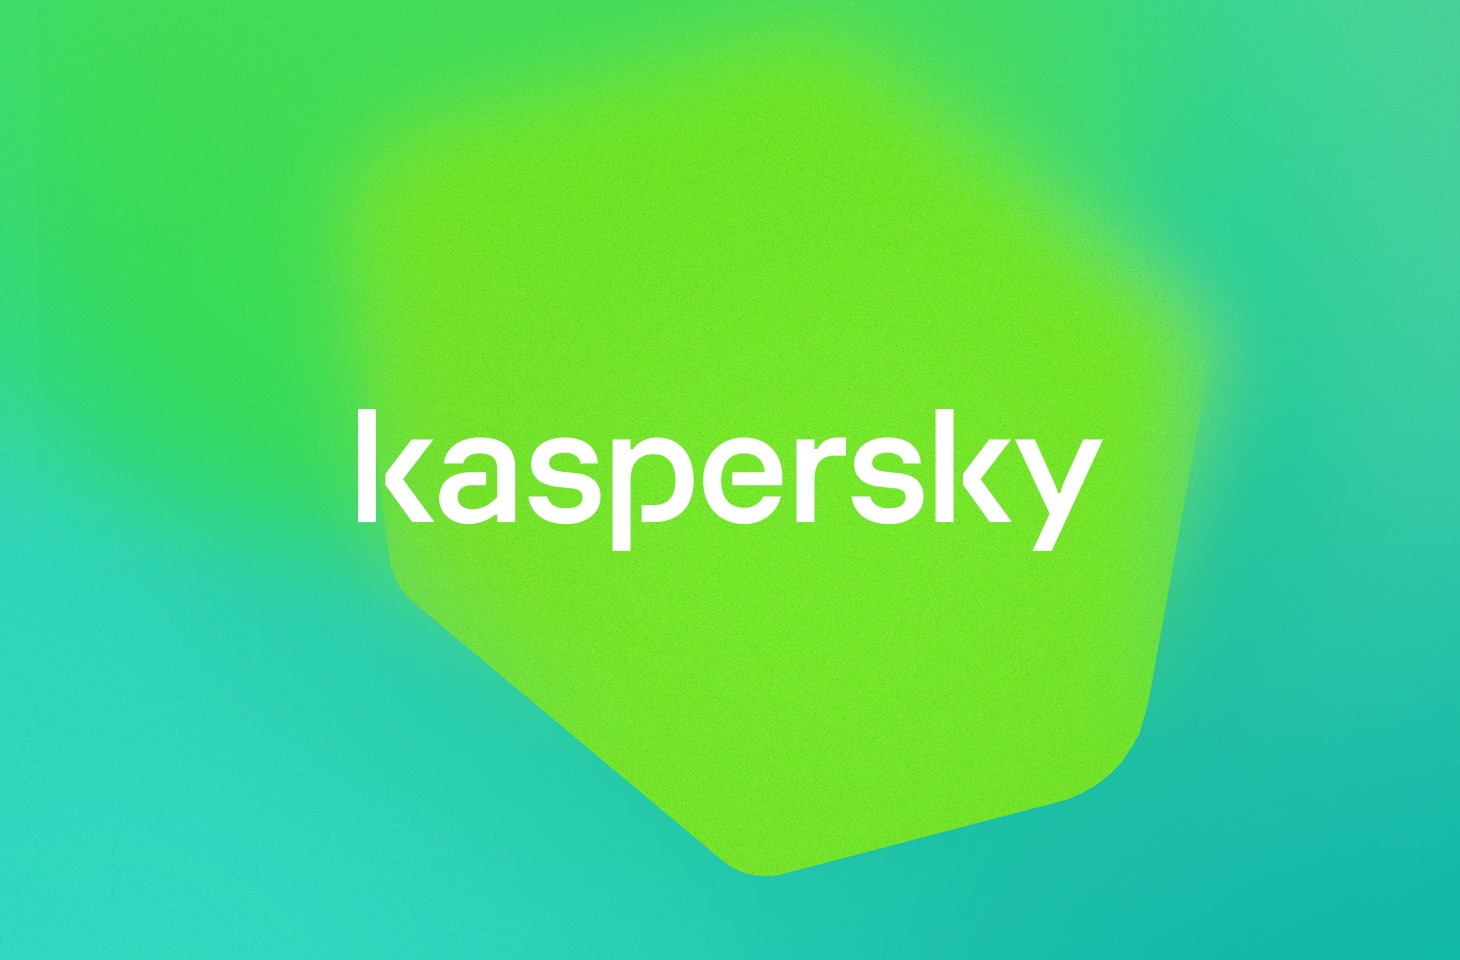 kaspersky-rebranding-in-d1etails-featured_d5e90.jpg